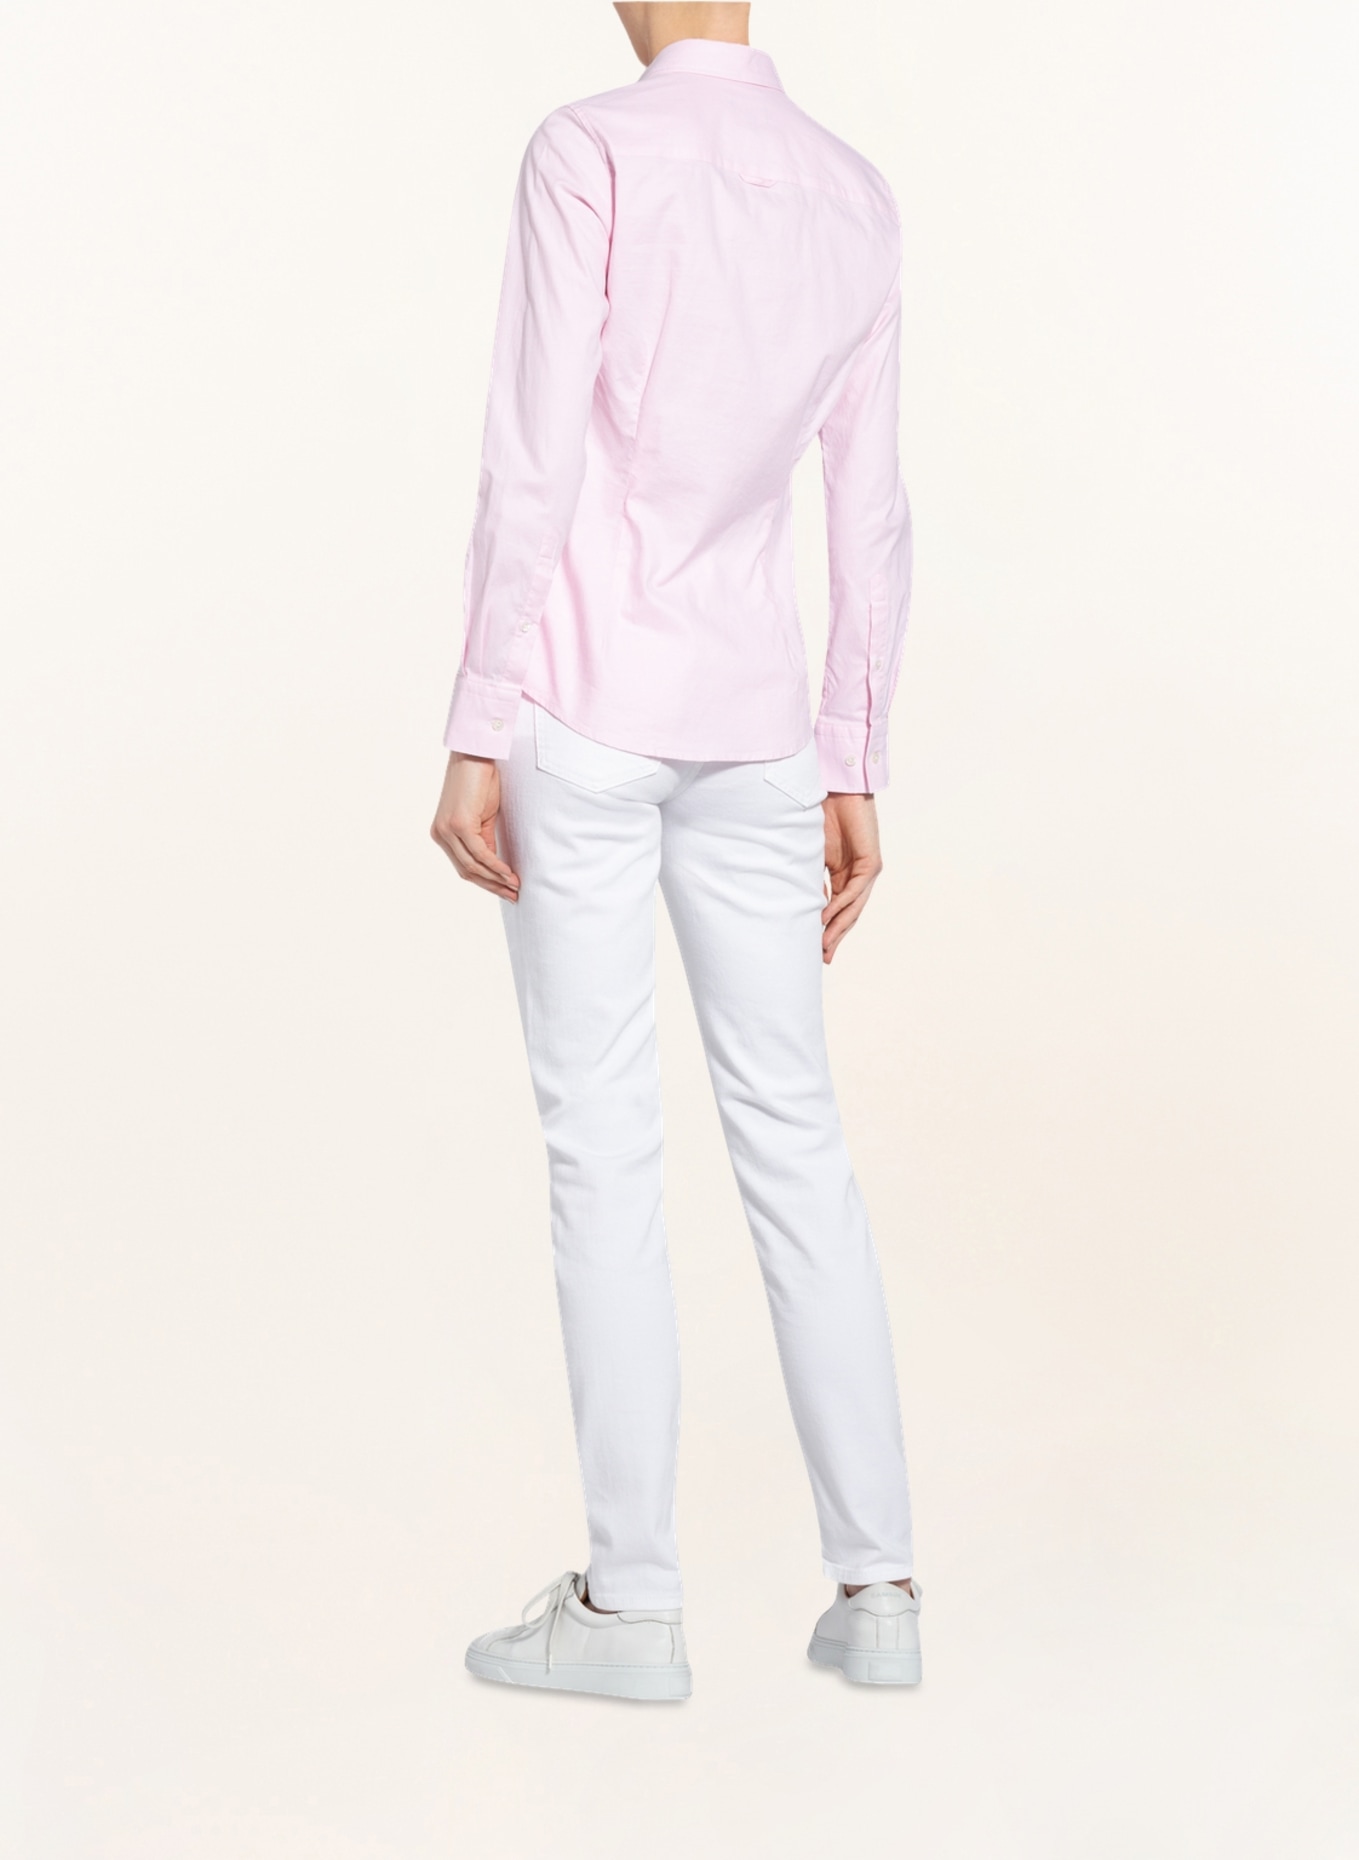 GANT Shirt blouse, Color: LIGHT PINK (Image 3)